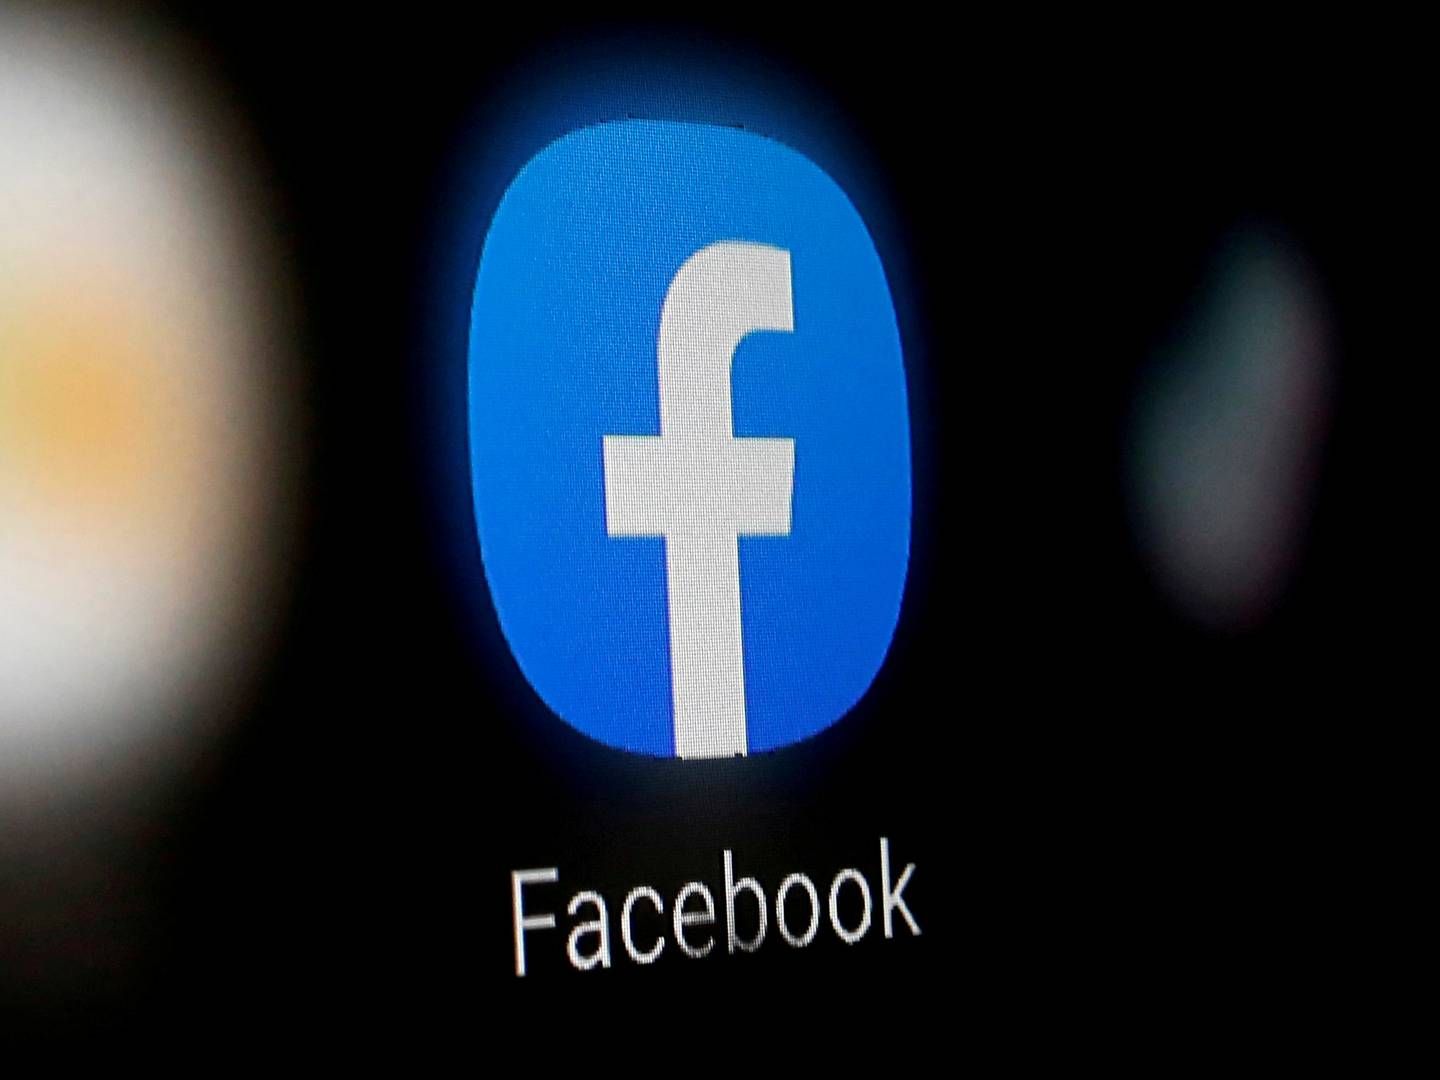 Under coronapandemien har Facebook oplevet en stigning i antallet af brugere. | Foto: Dado Ruvic/REUTERS / X02714